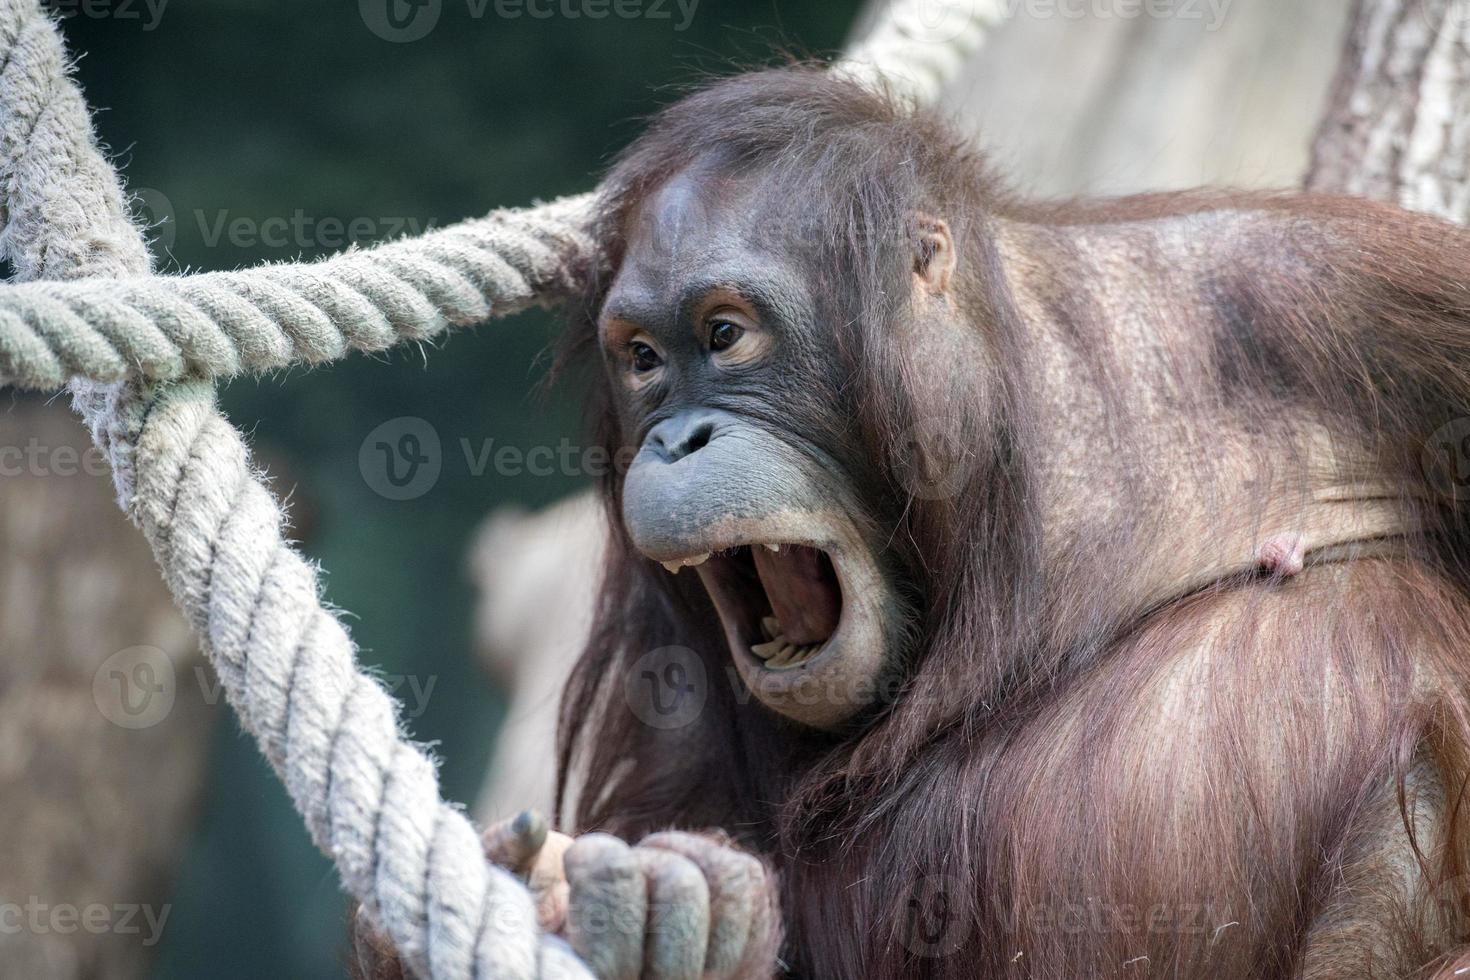 orangutan monkey close up portrait photo